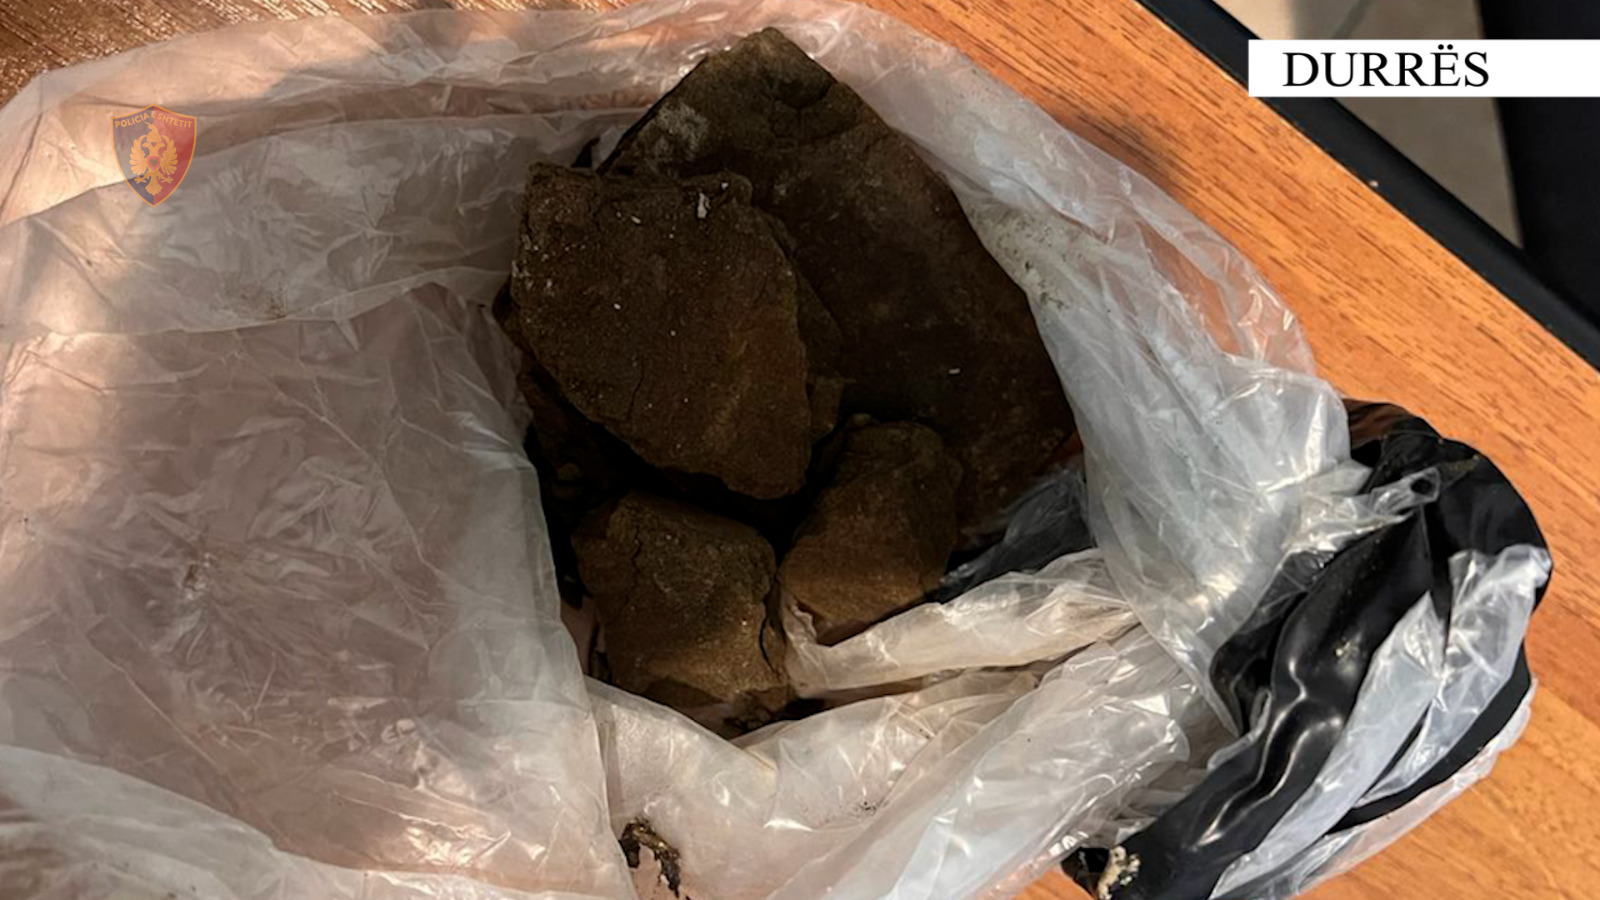 Shisnin drogë në formë çokollate, arrestohen 4 persona në Durrës